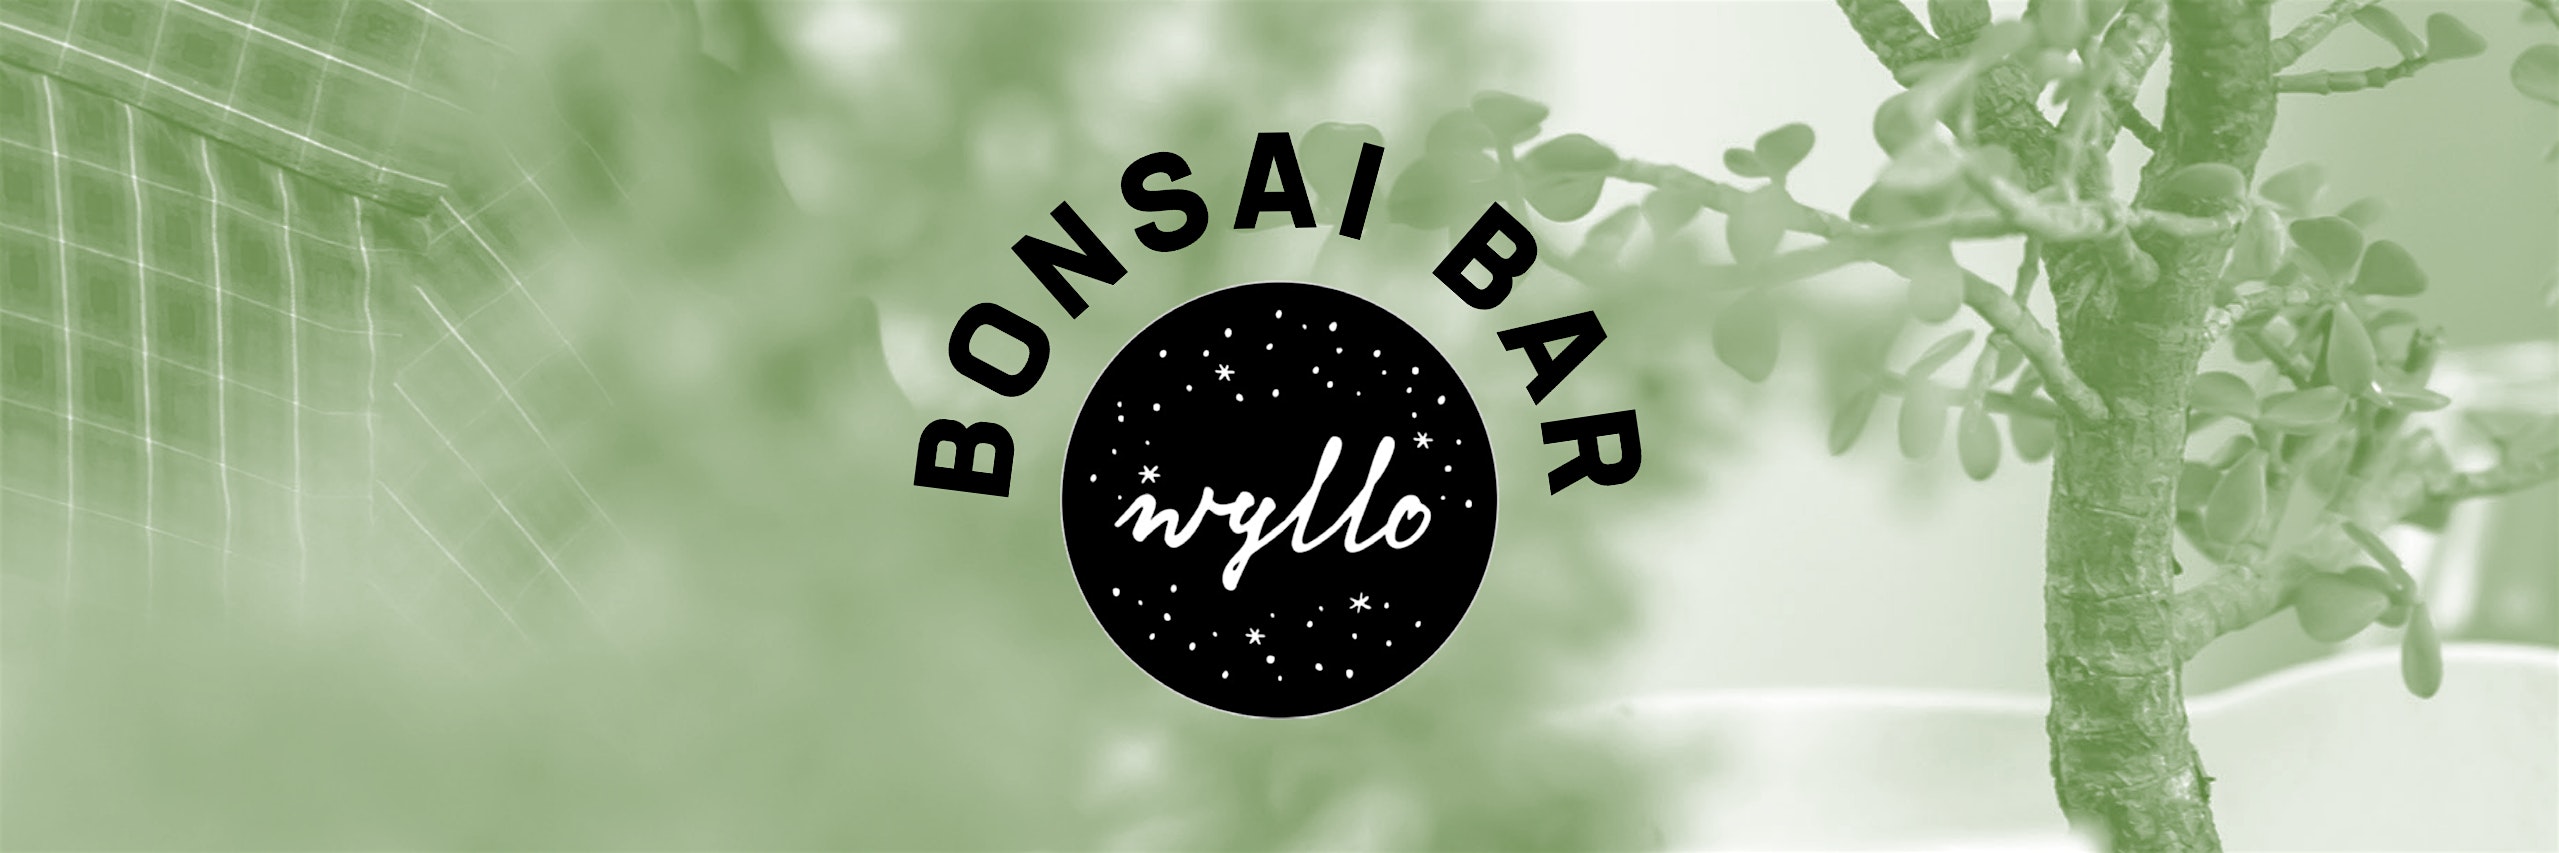 Bonsai Bar @ Wyllo